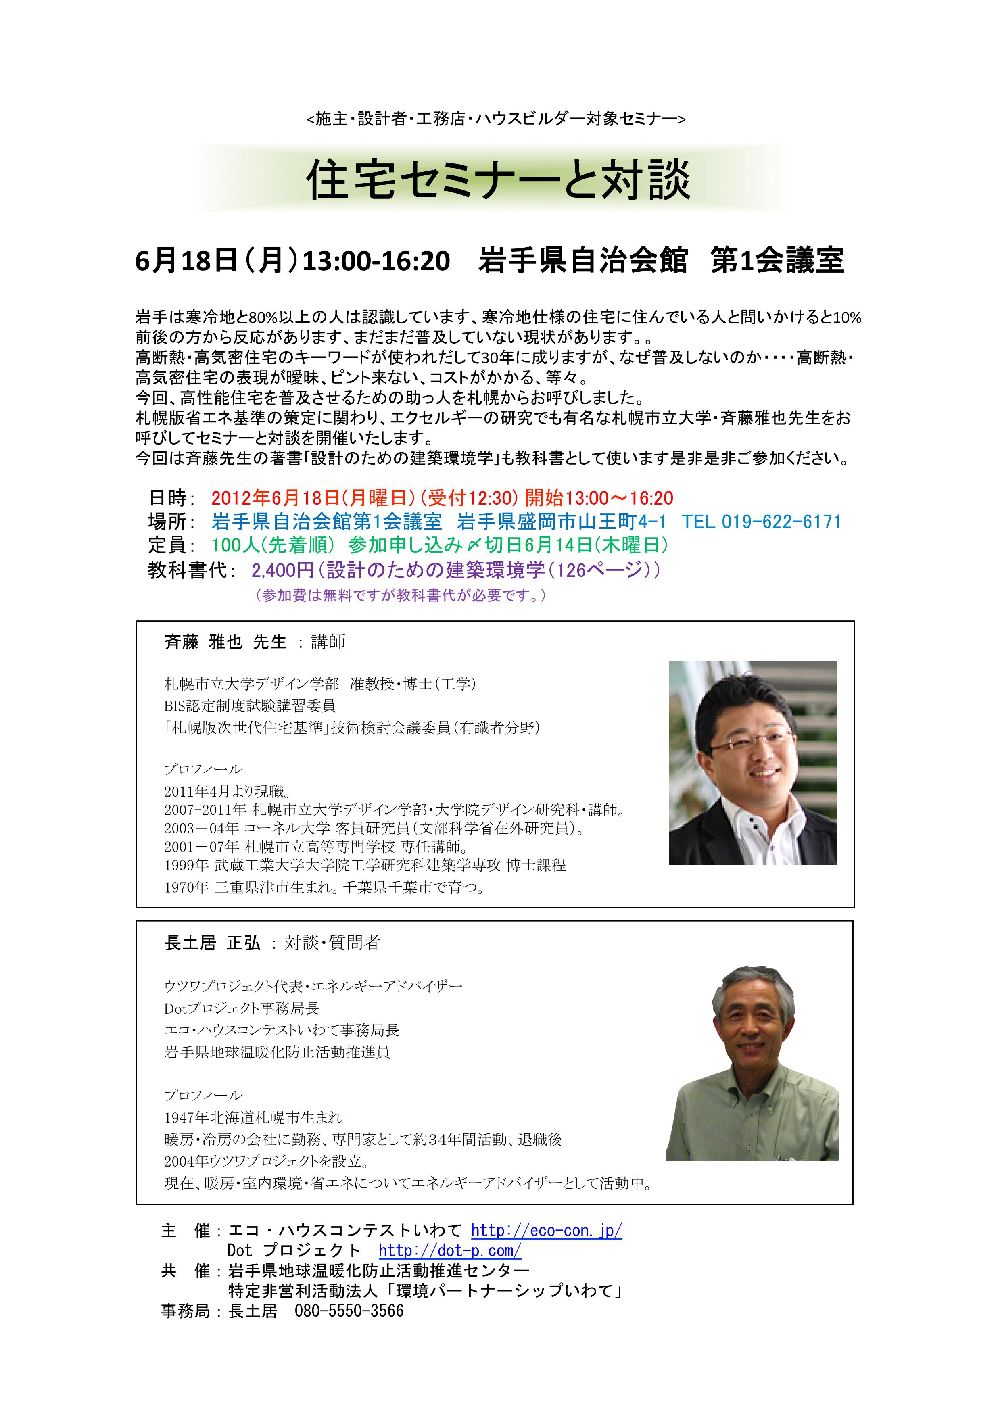 ○　2012 6 18 住宅セミナー+対談_01